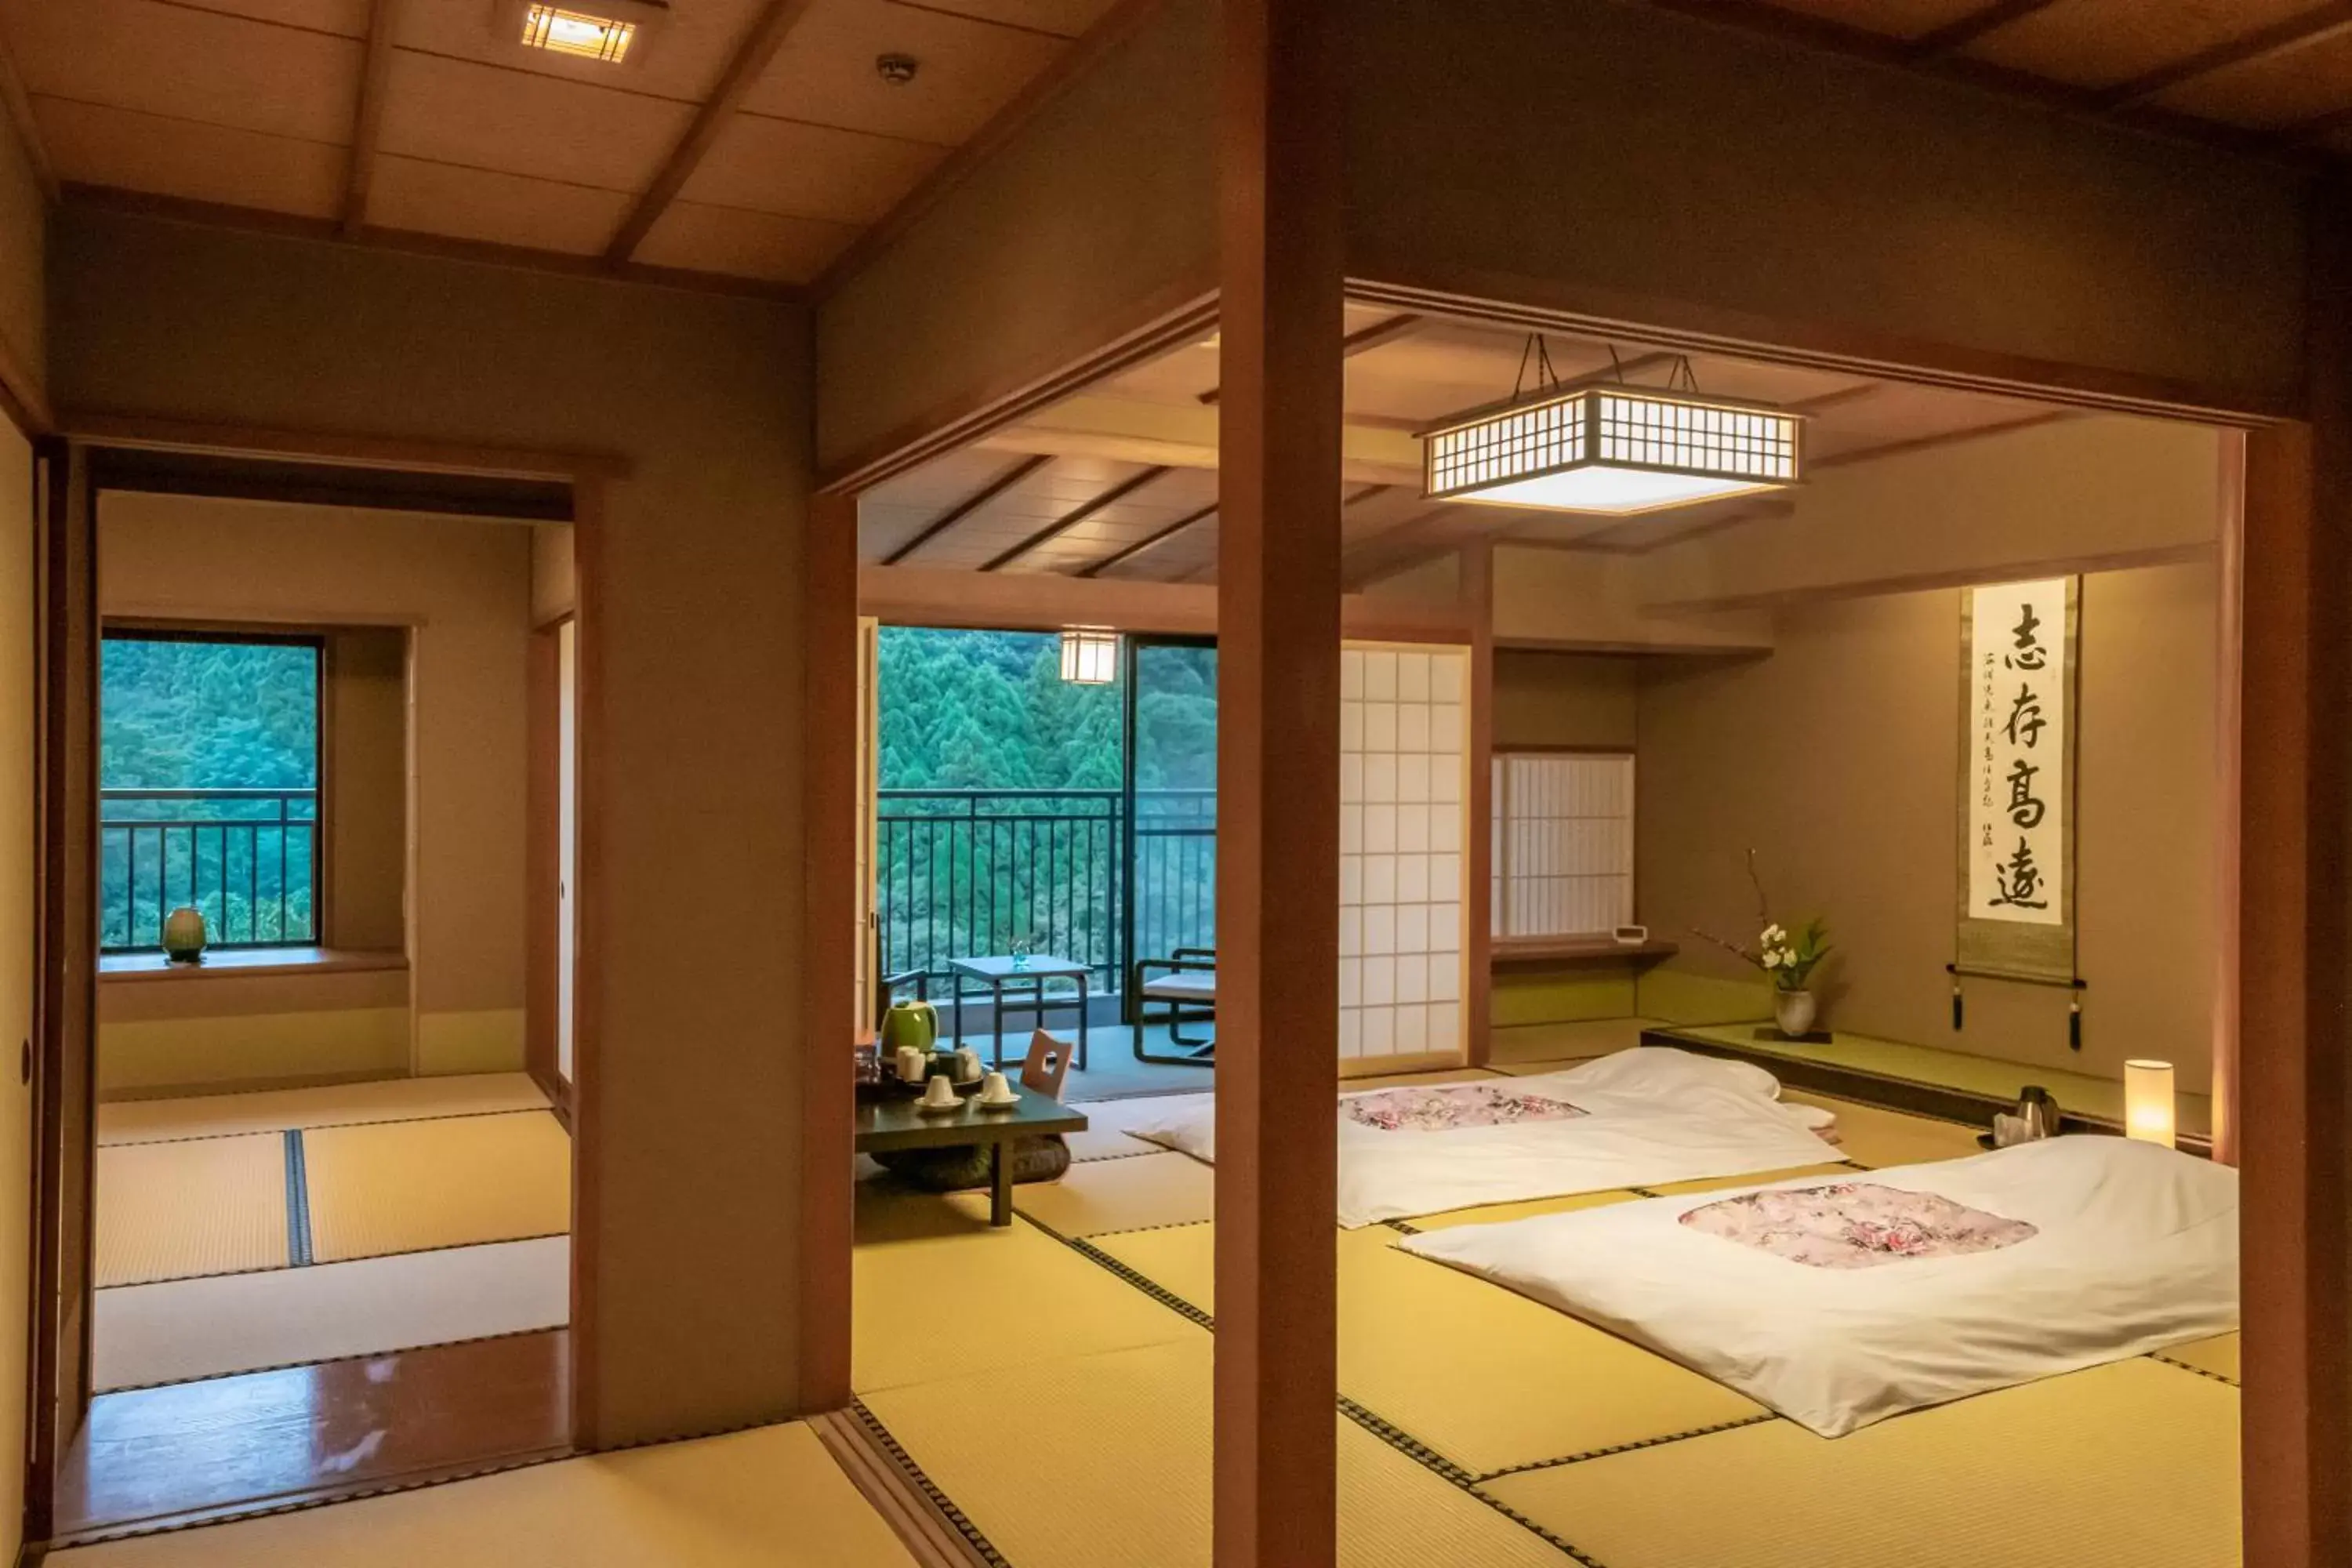 Photo of the whole room in Yamanaka Onsen Hanatsubaki                                                 